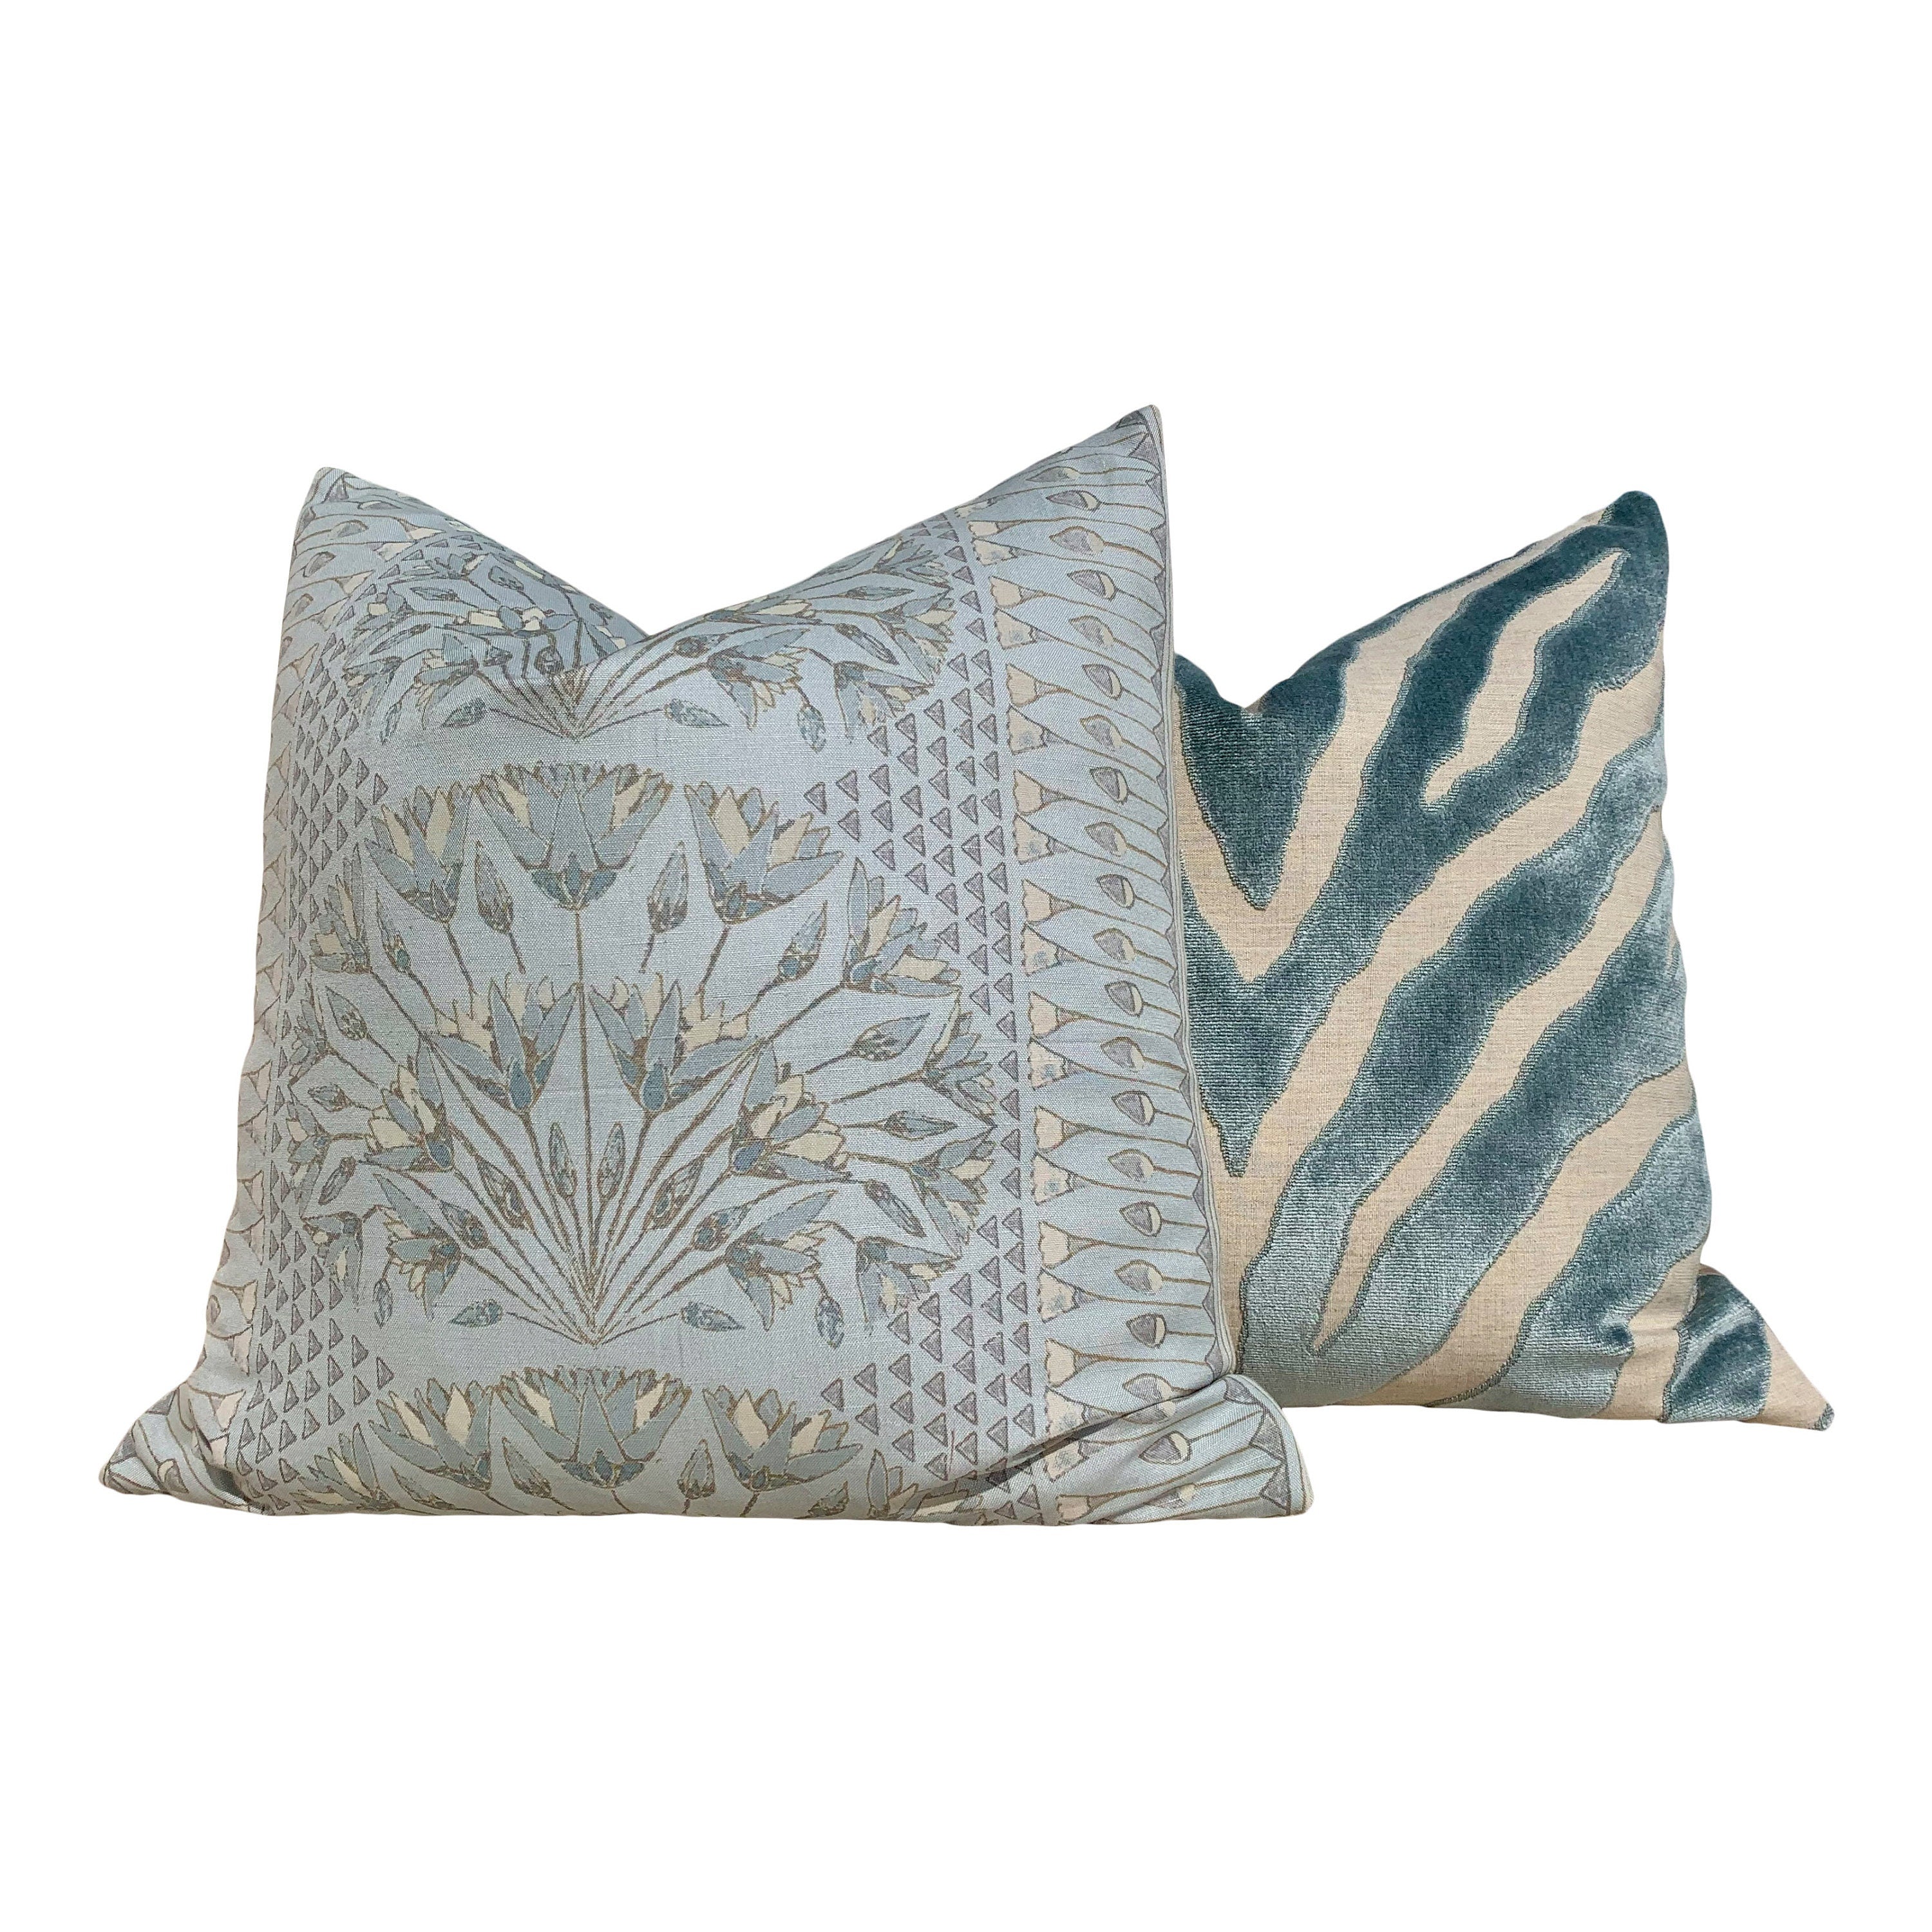 Etosha Velvet Pillow cover in Mineral. Designer Velvet Pillow // Lumbar Velvet Pillow Cover // Zebra Velvet Pillow in Spa